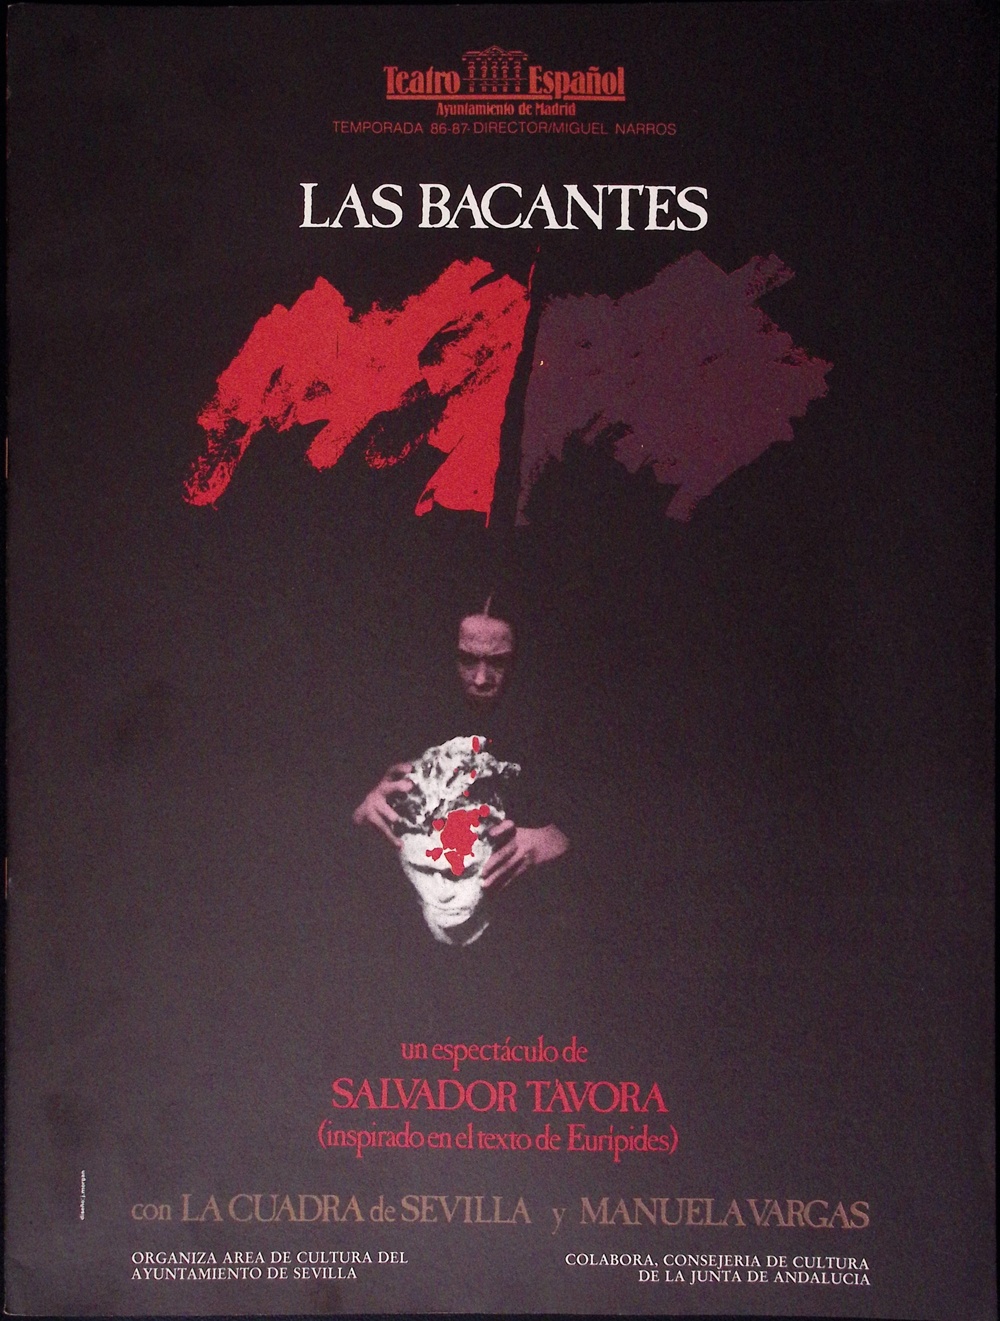 Las Bacantes. Un espectáculo de Salvador Távora (inspirado en el texto de Eurípides) con La Cuadra de Sevilla y Manuela Vargas